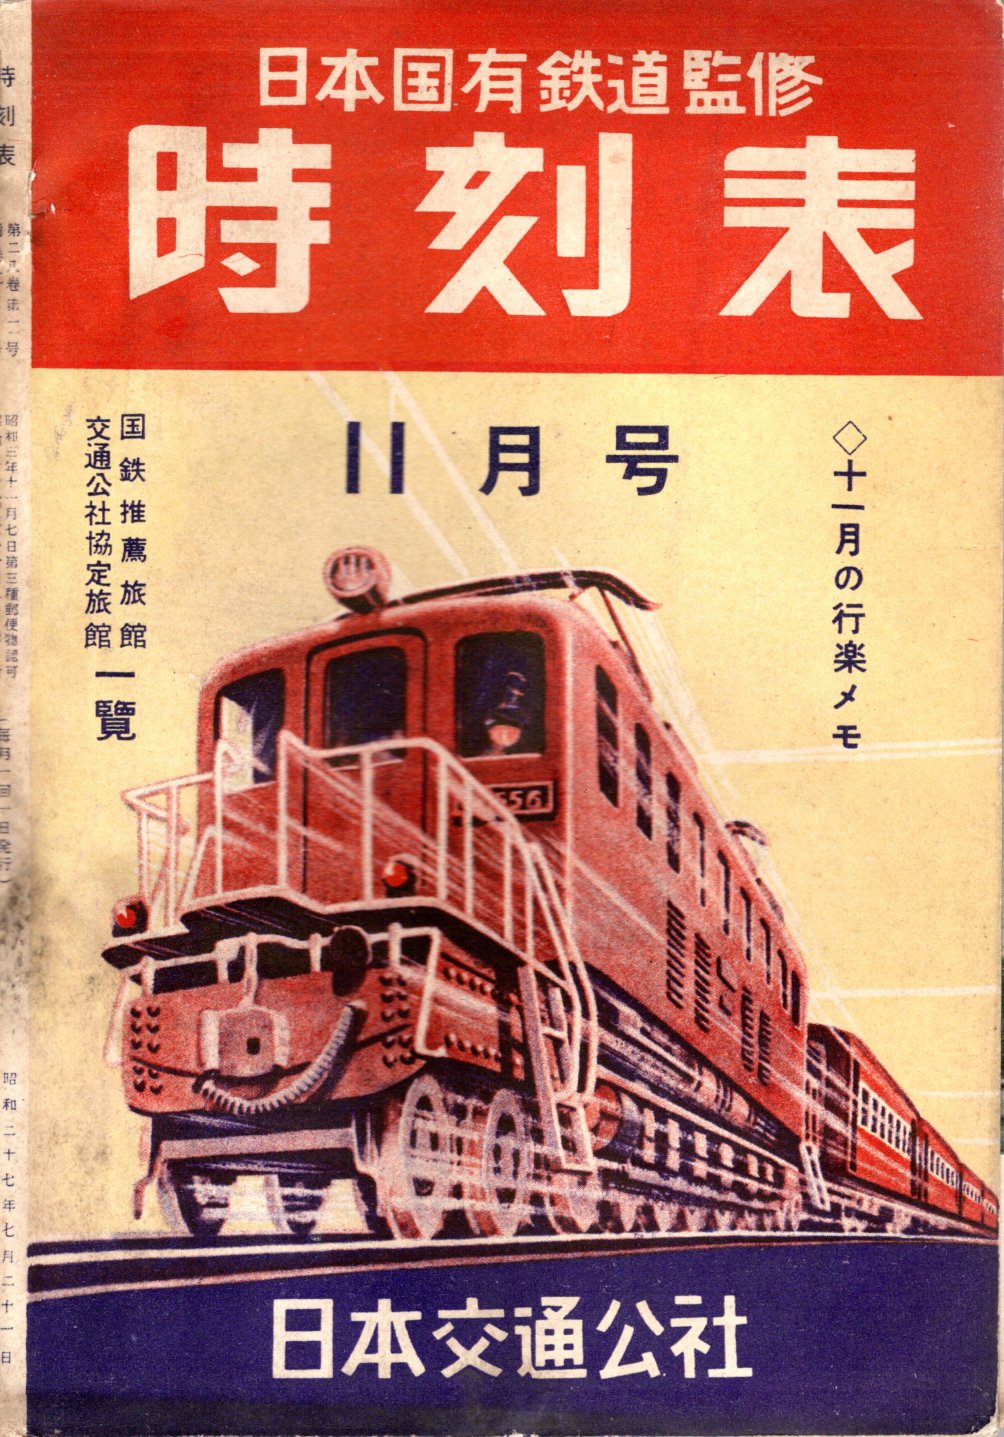 JTB時刻表1952年11月号